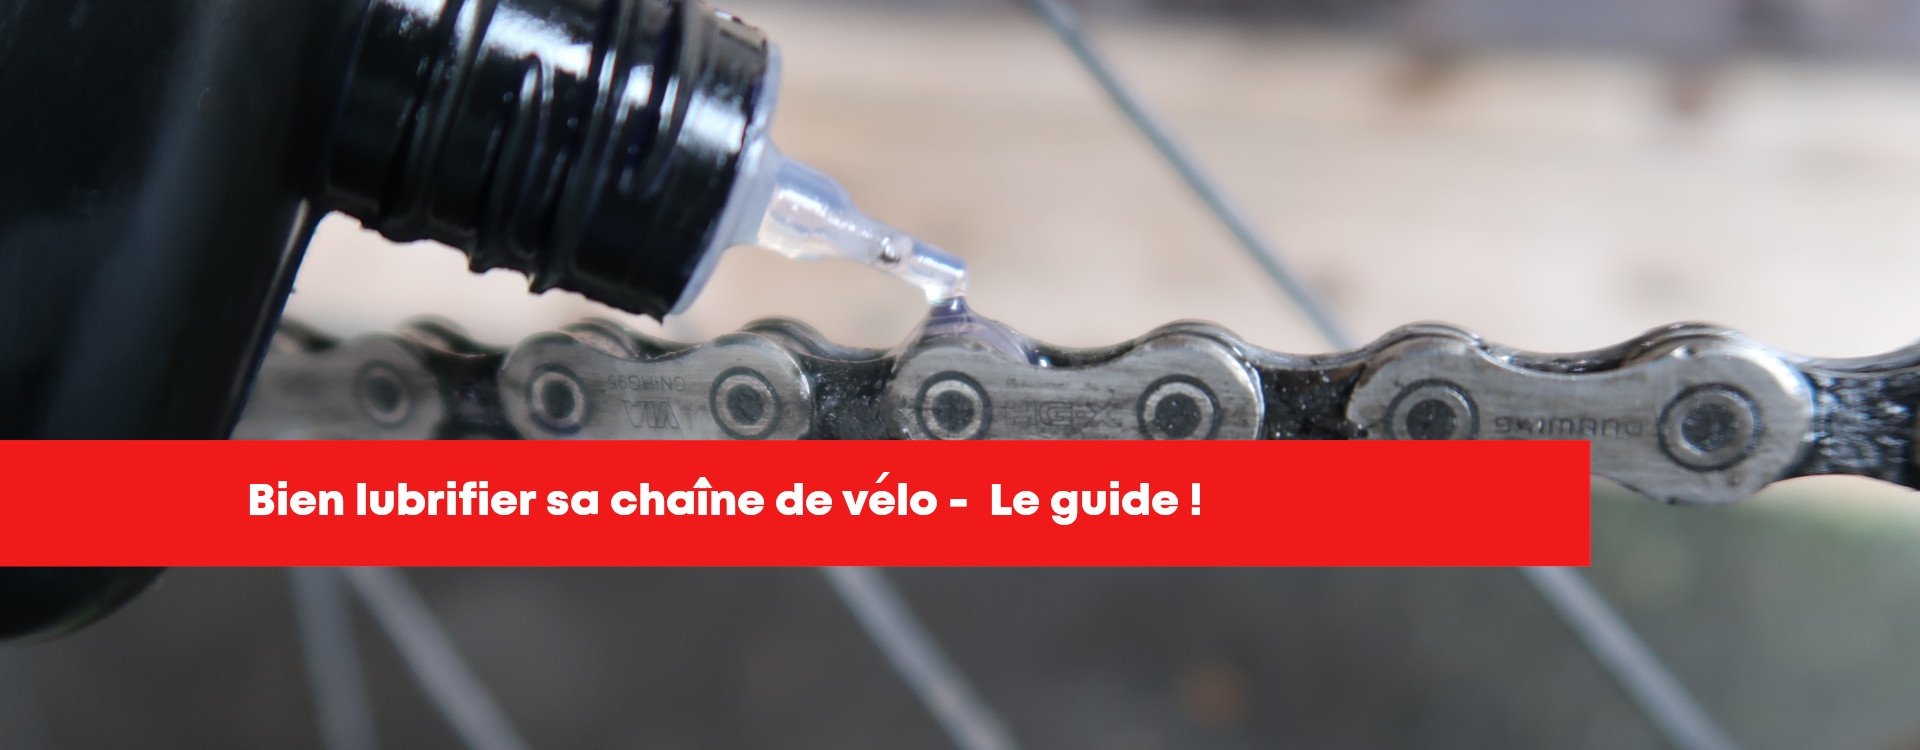 Graisser - lubrifier votre chaîne vélo - Notre guide